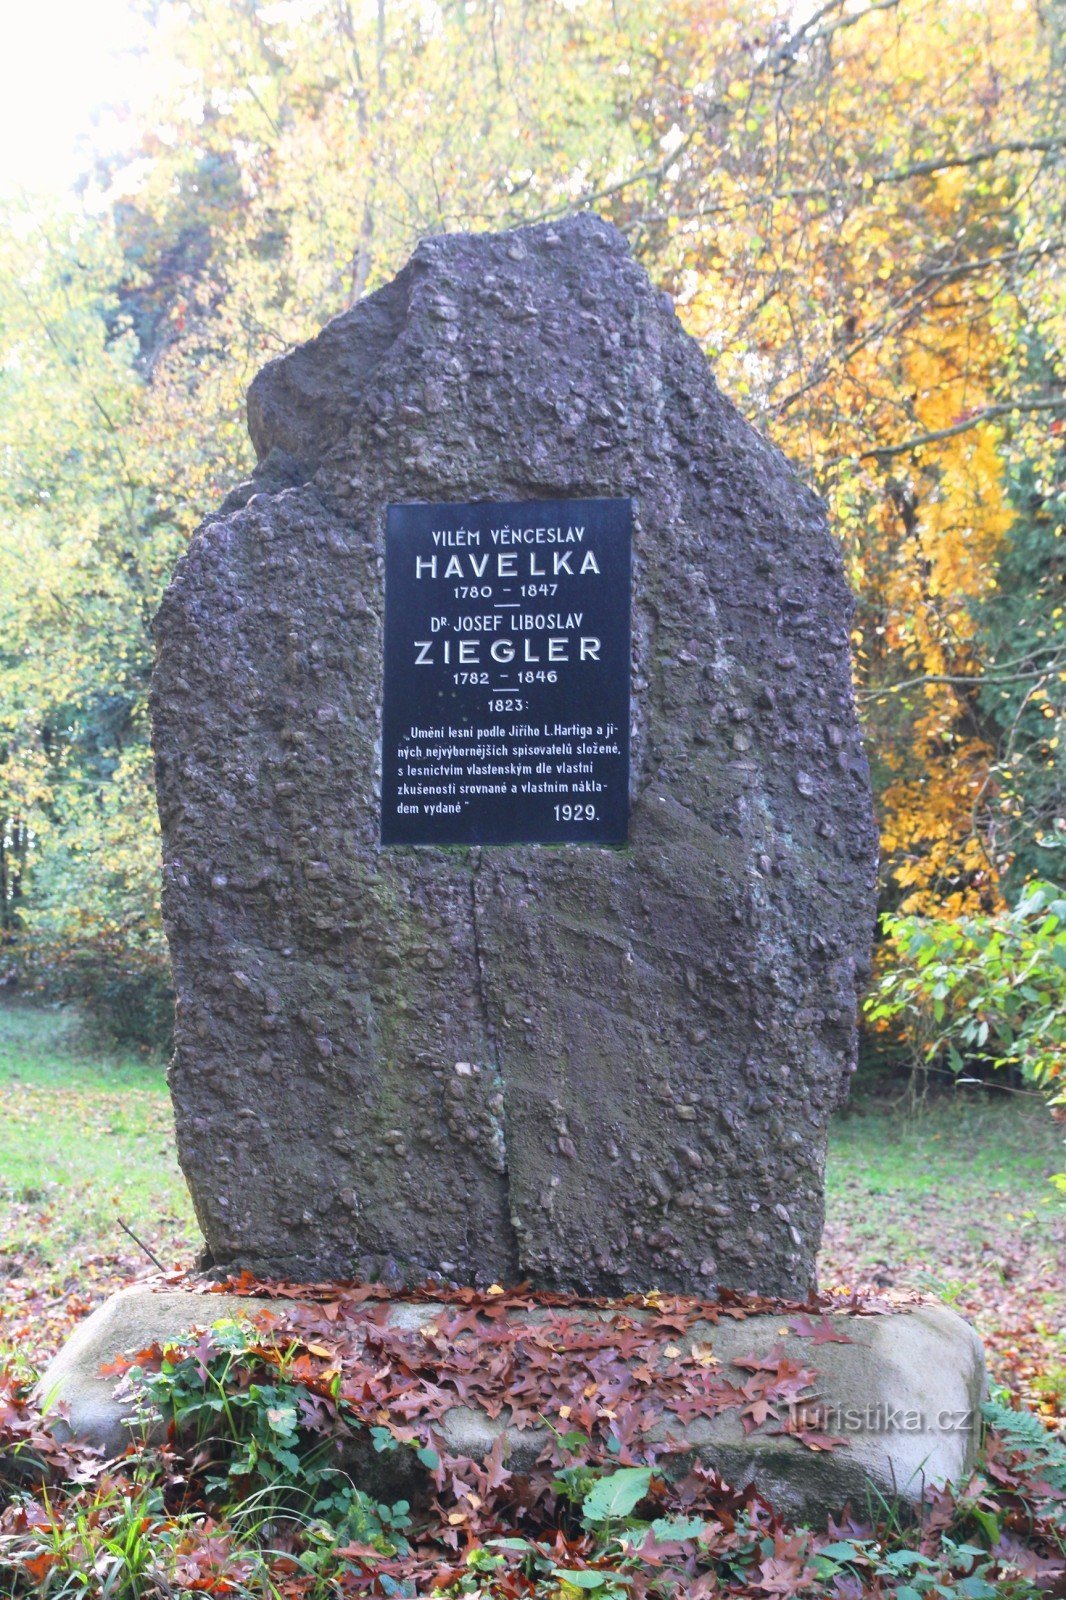 Μνημείο του VV Havelka και του JL Ziegler